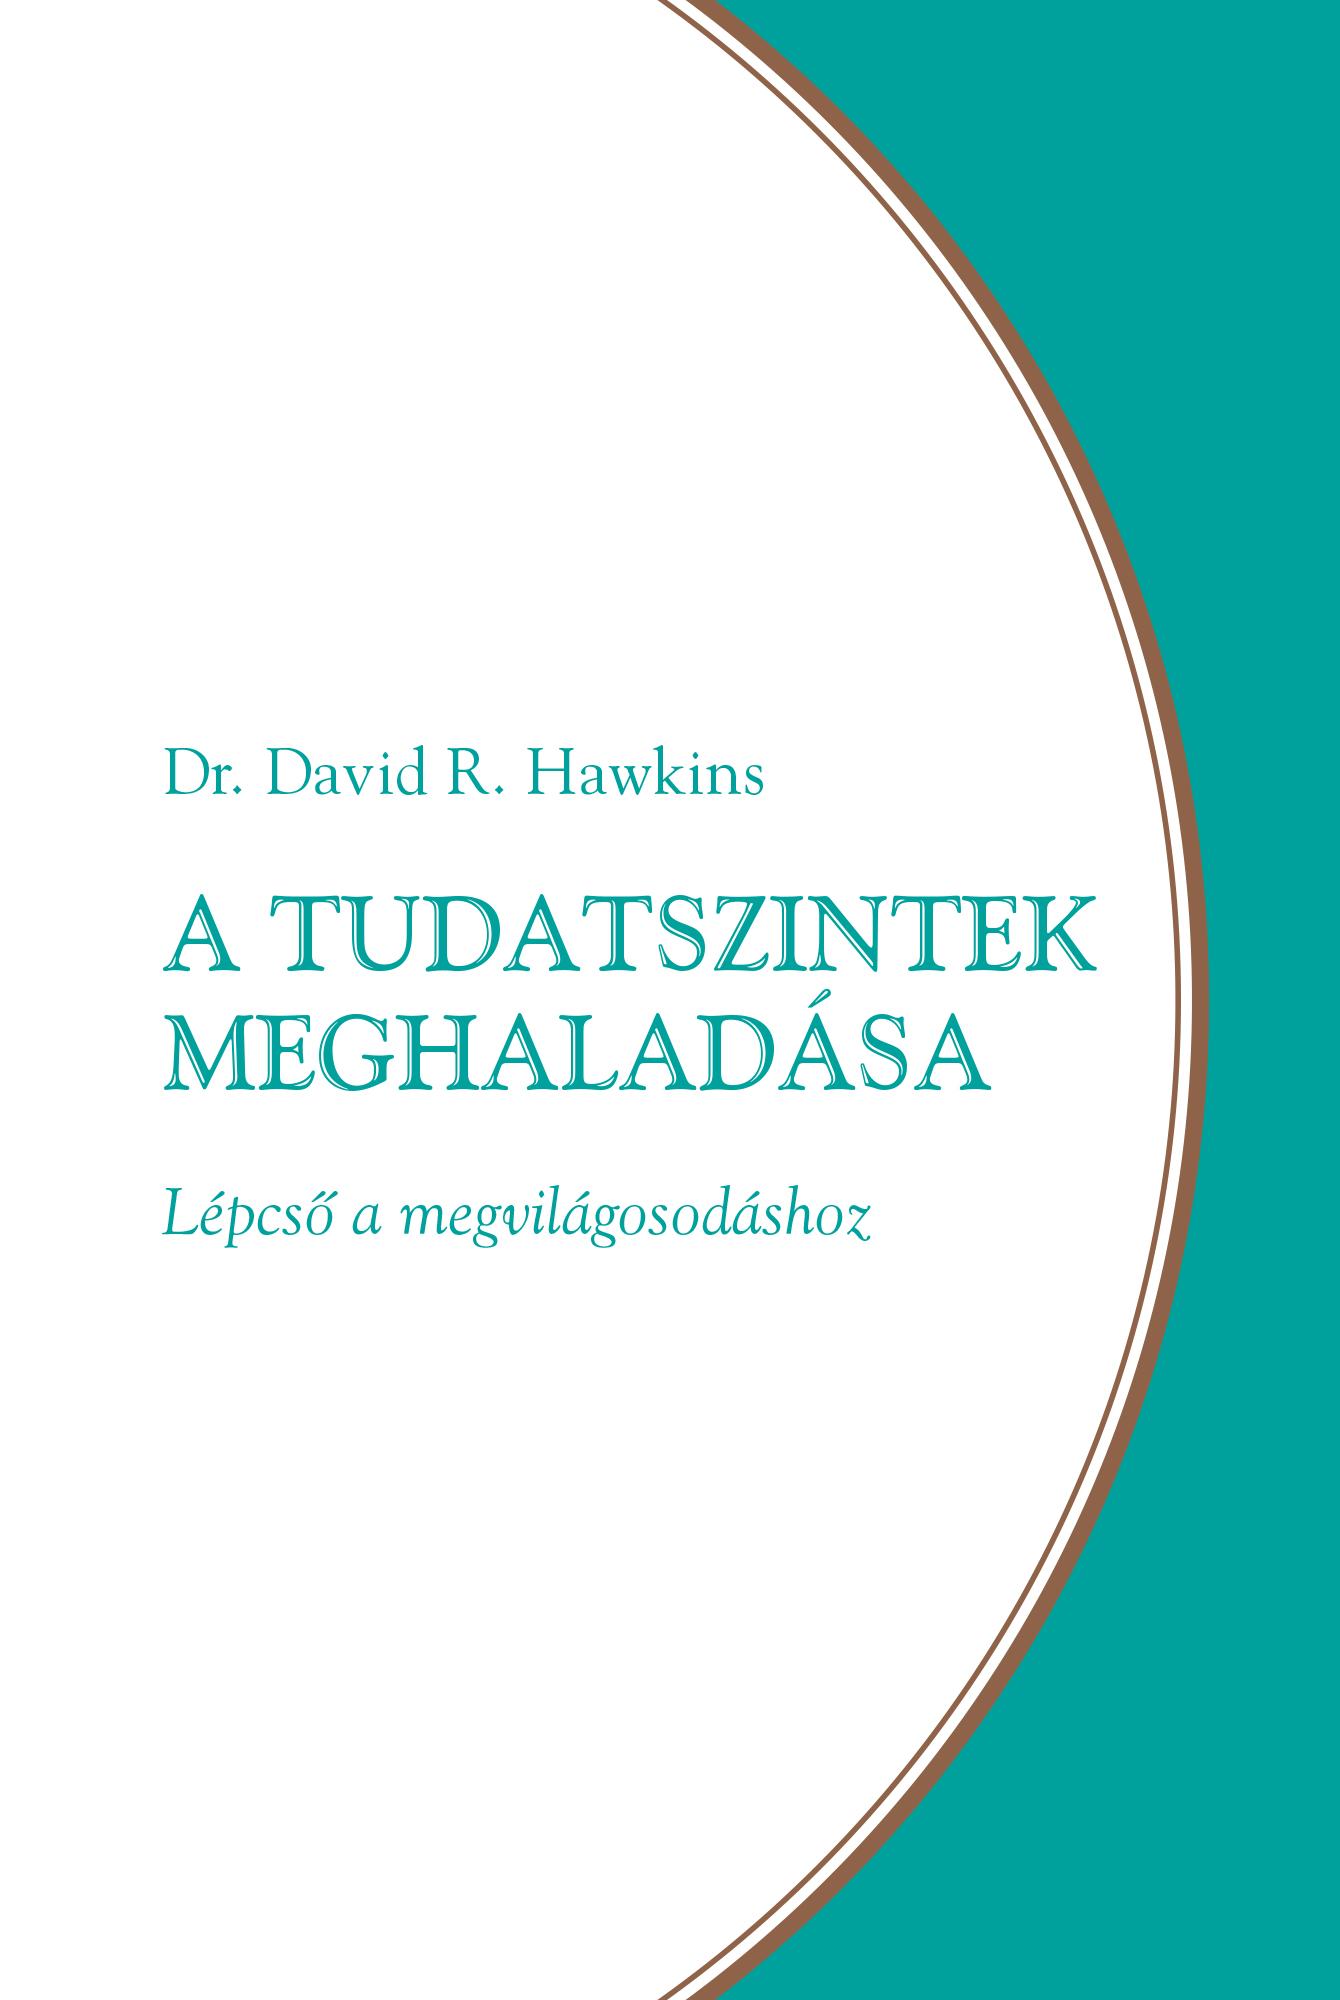 HAWKINS, DAVID R. - A TUDATSZINTEK MEGHALADSA - LPCS A MEGVILGOSODSHOZ